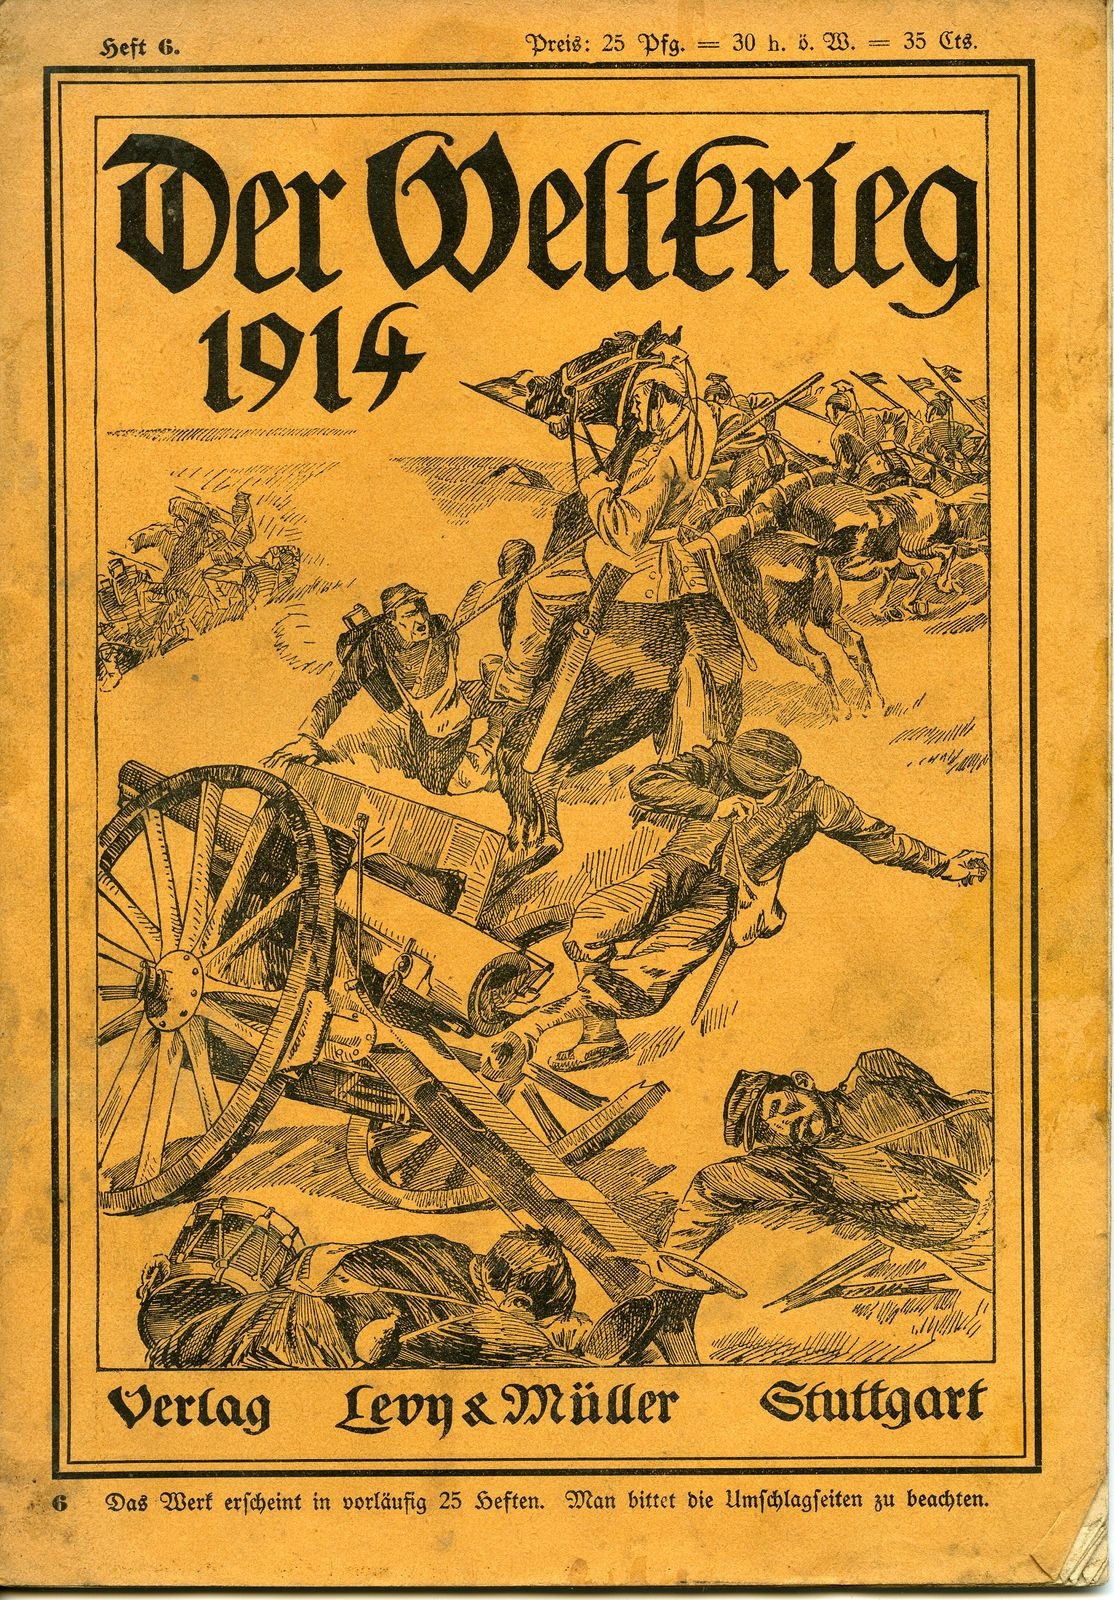 Zeitschrift "Der Weltkrieg 1914", Heft 6 (Historisches Museum der Pfalz, Speyer CC BY)